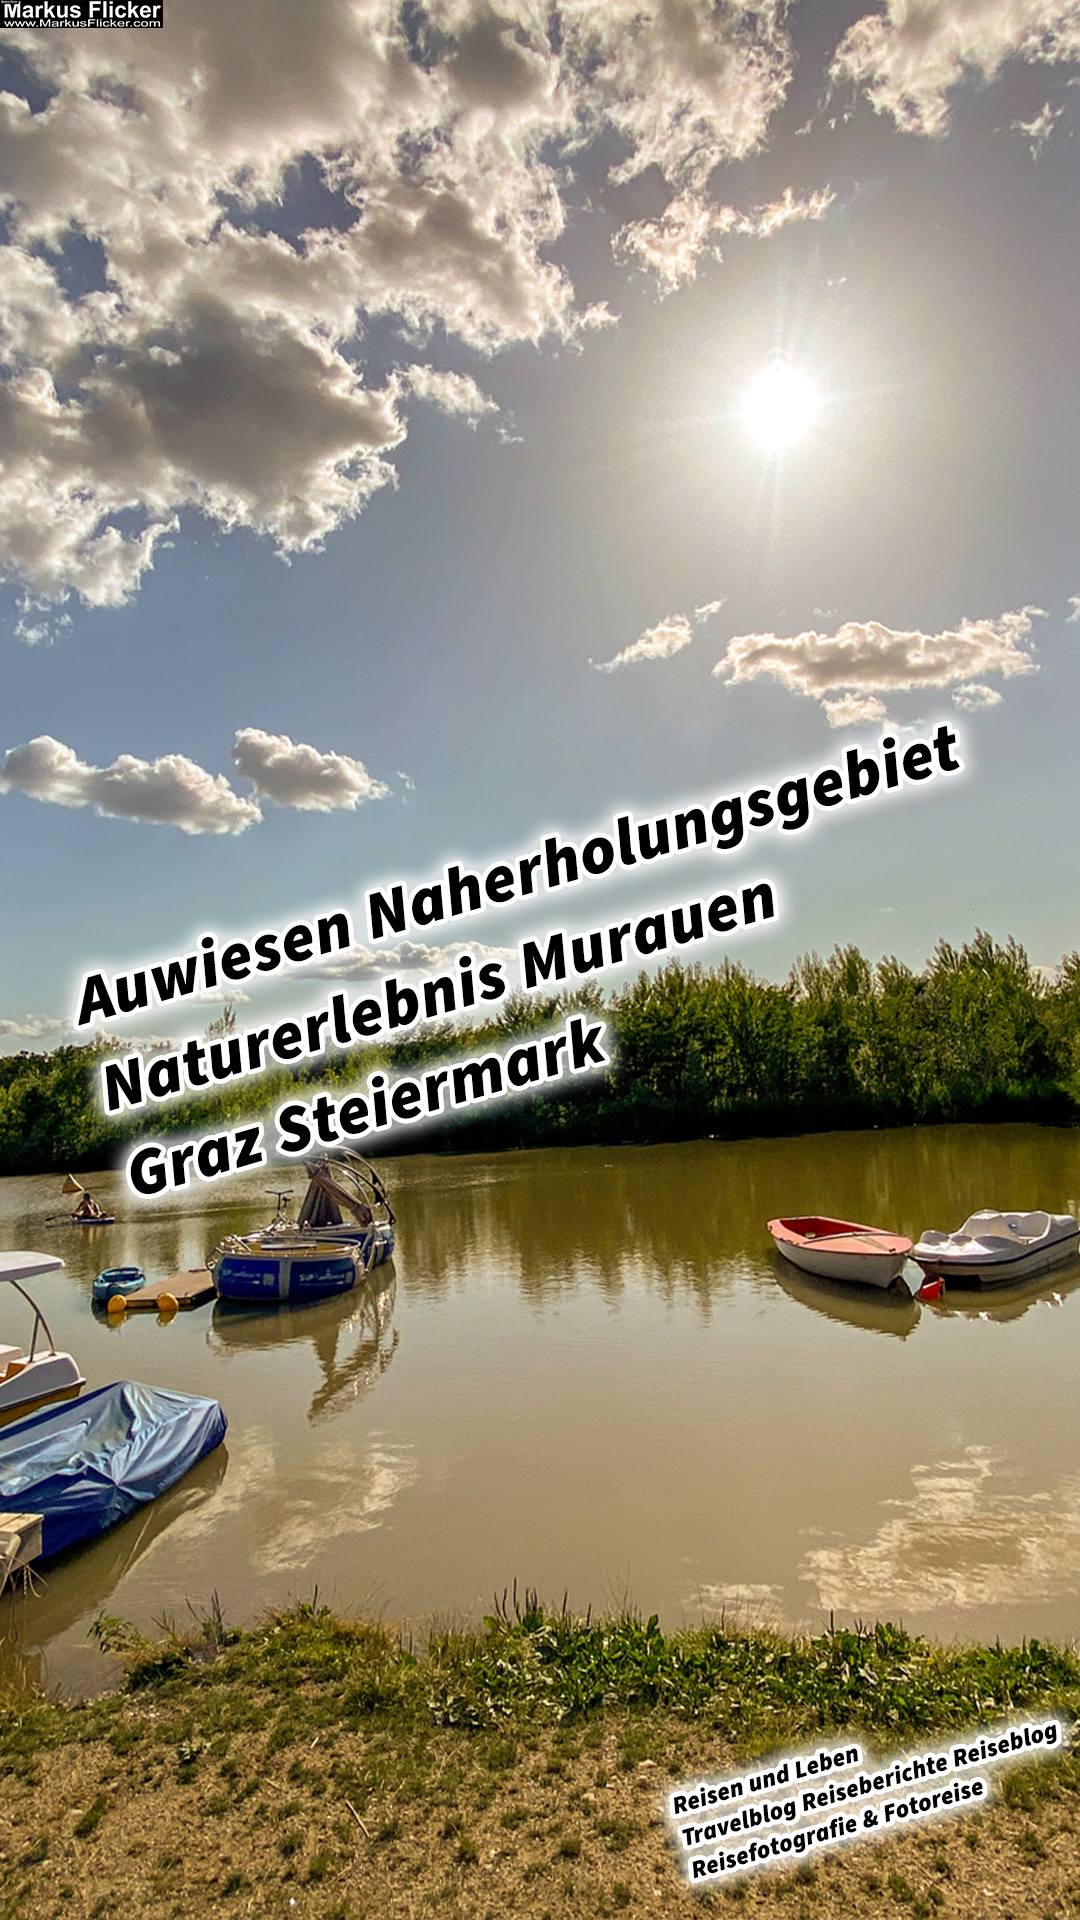 Auwiesen Naherholungsgebiet Naturerlebnis Murauen Graz Steiermark #visitstyria #visitaustria